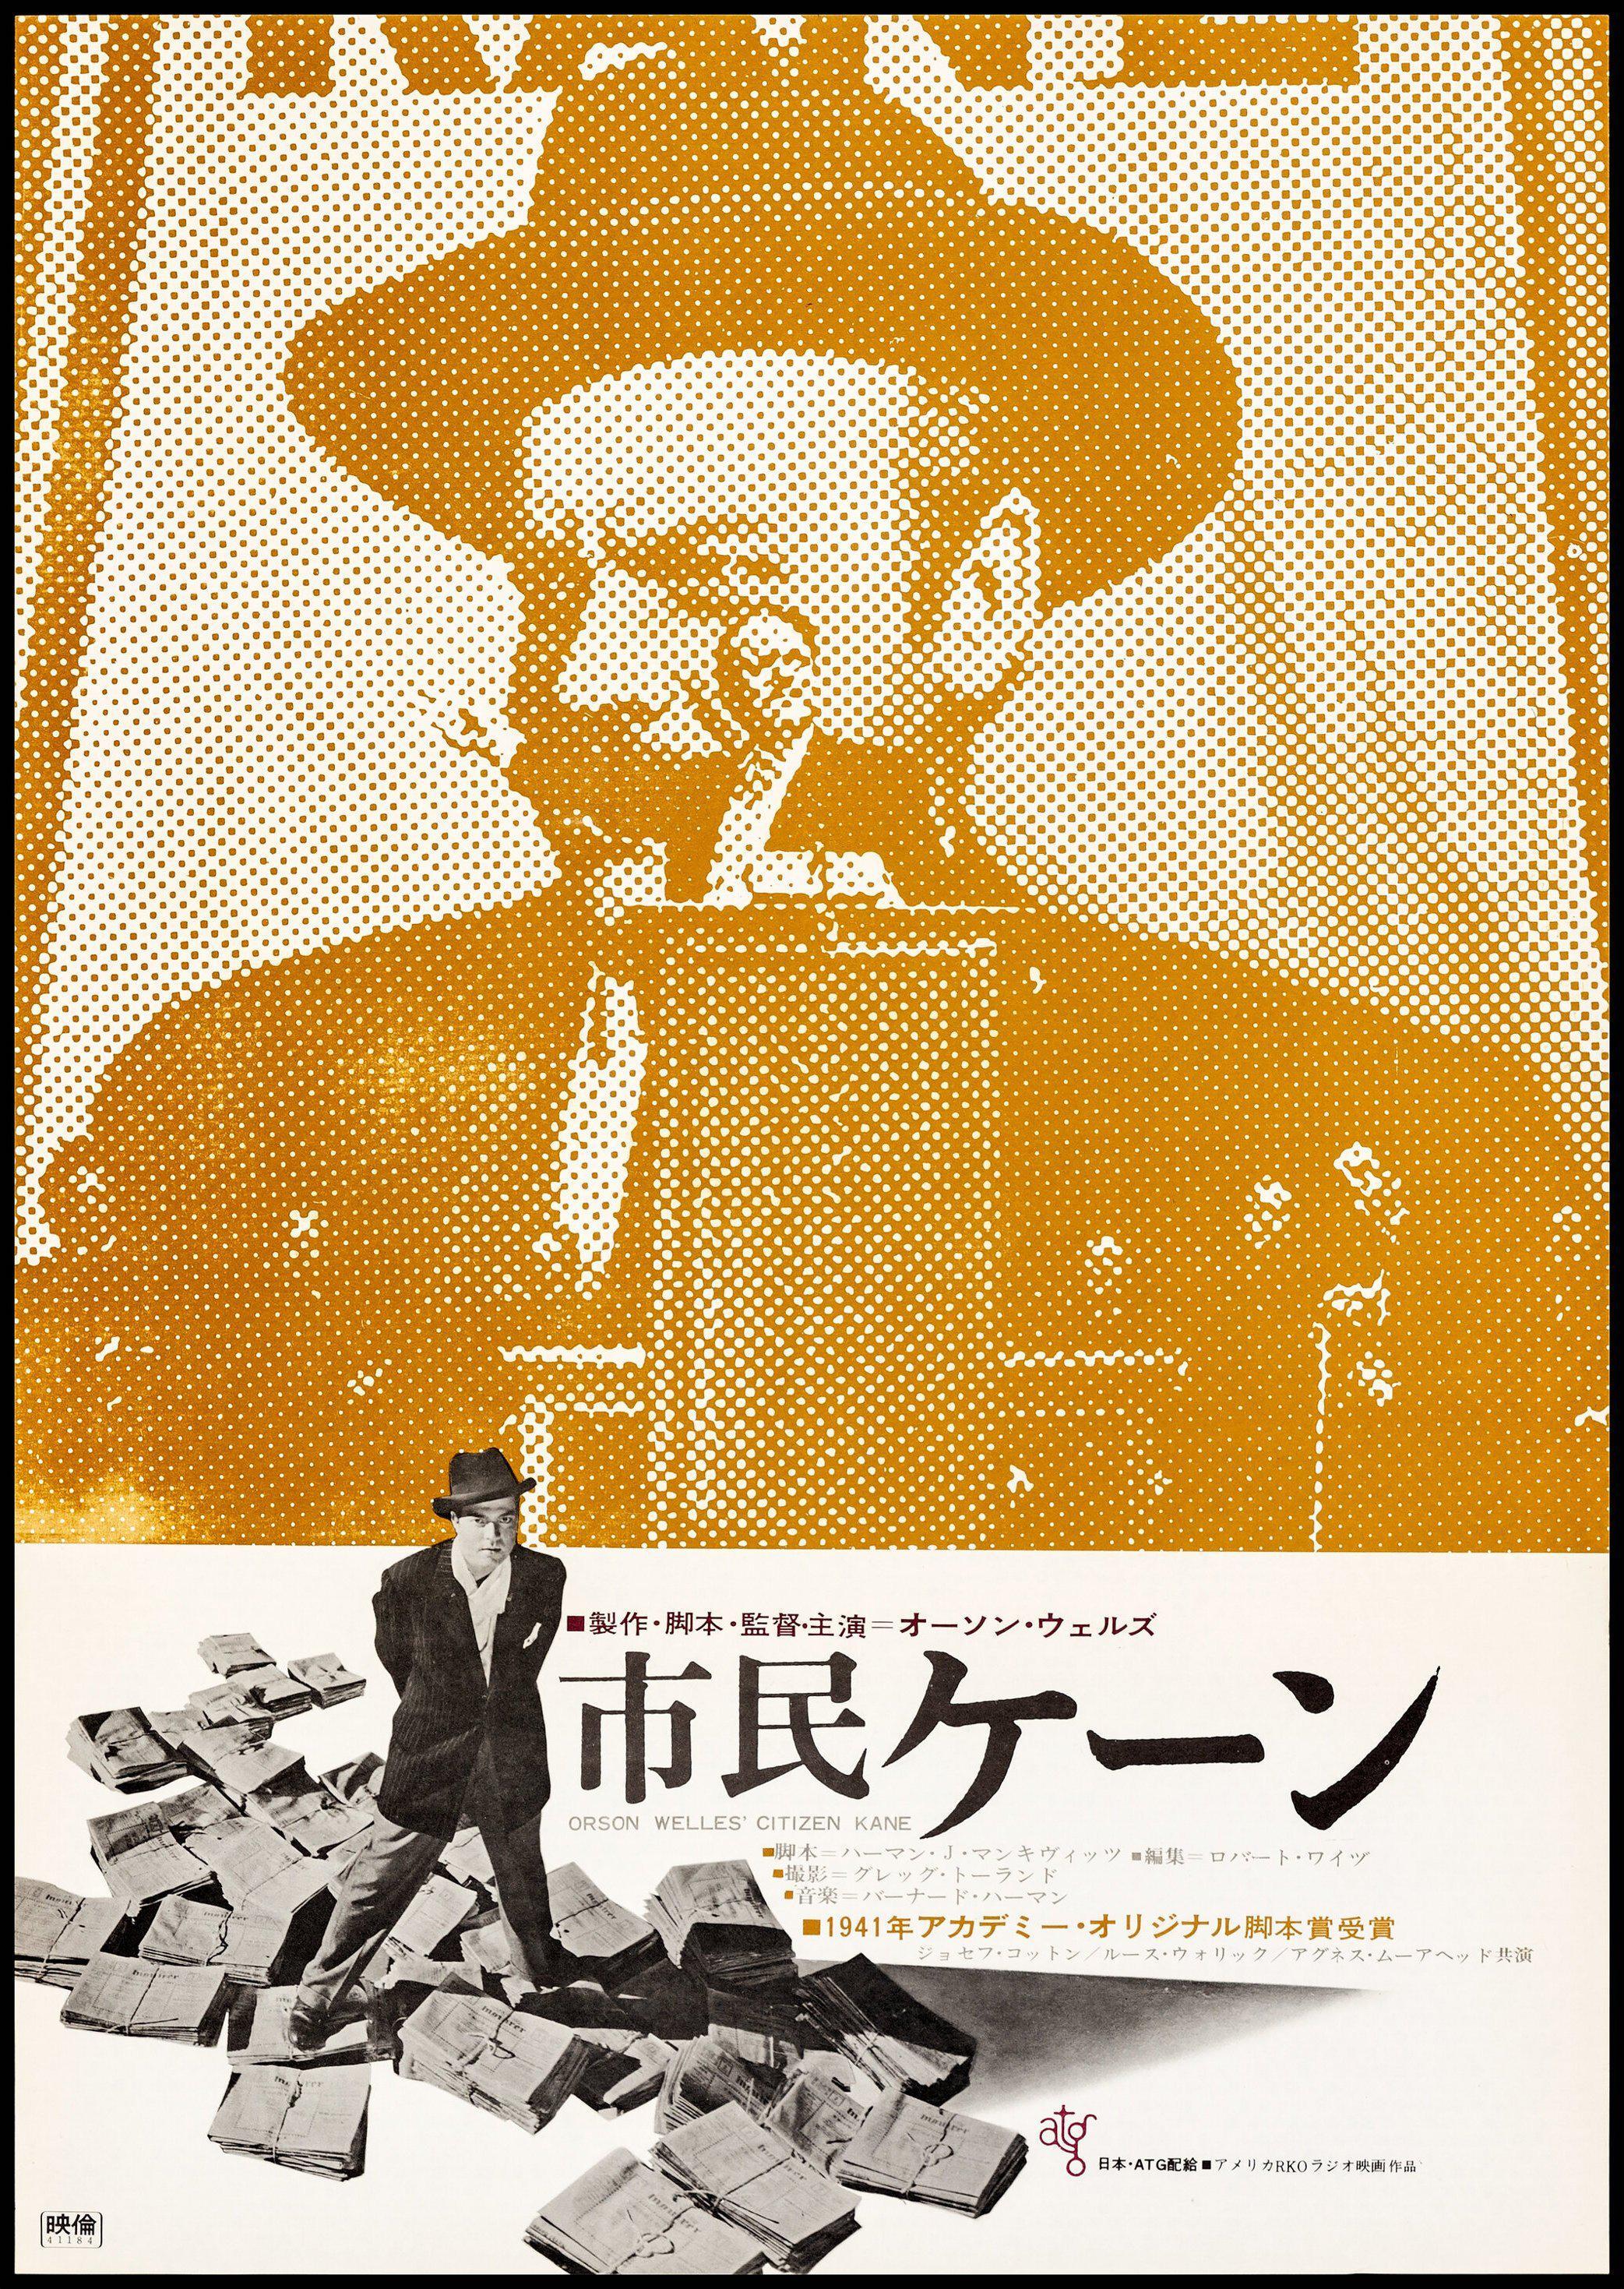 Citizen Kane Vintage Italian Movie Poster